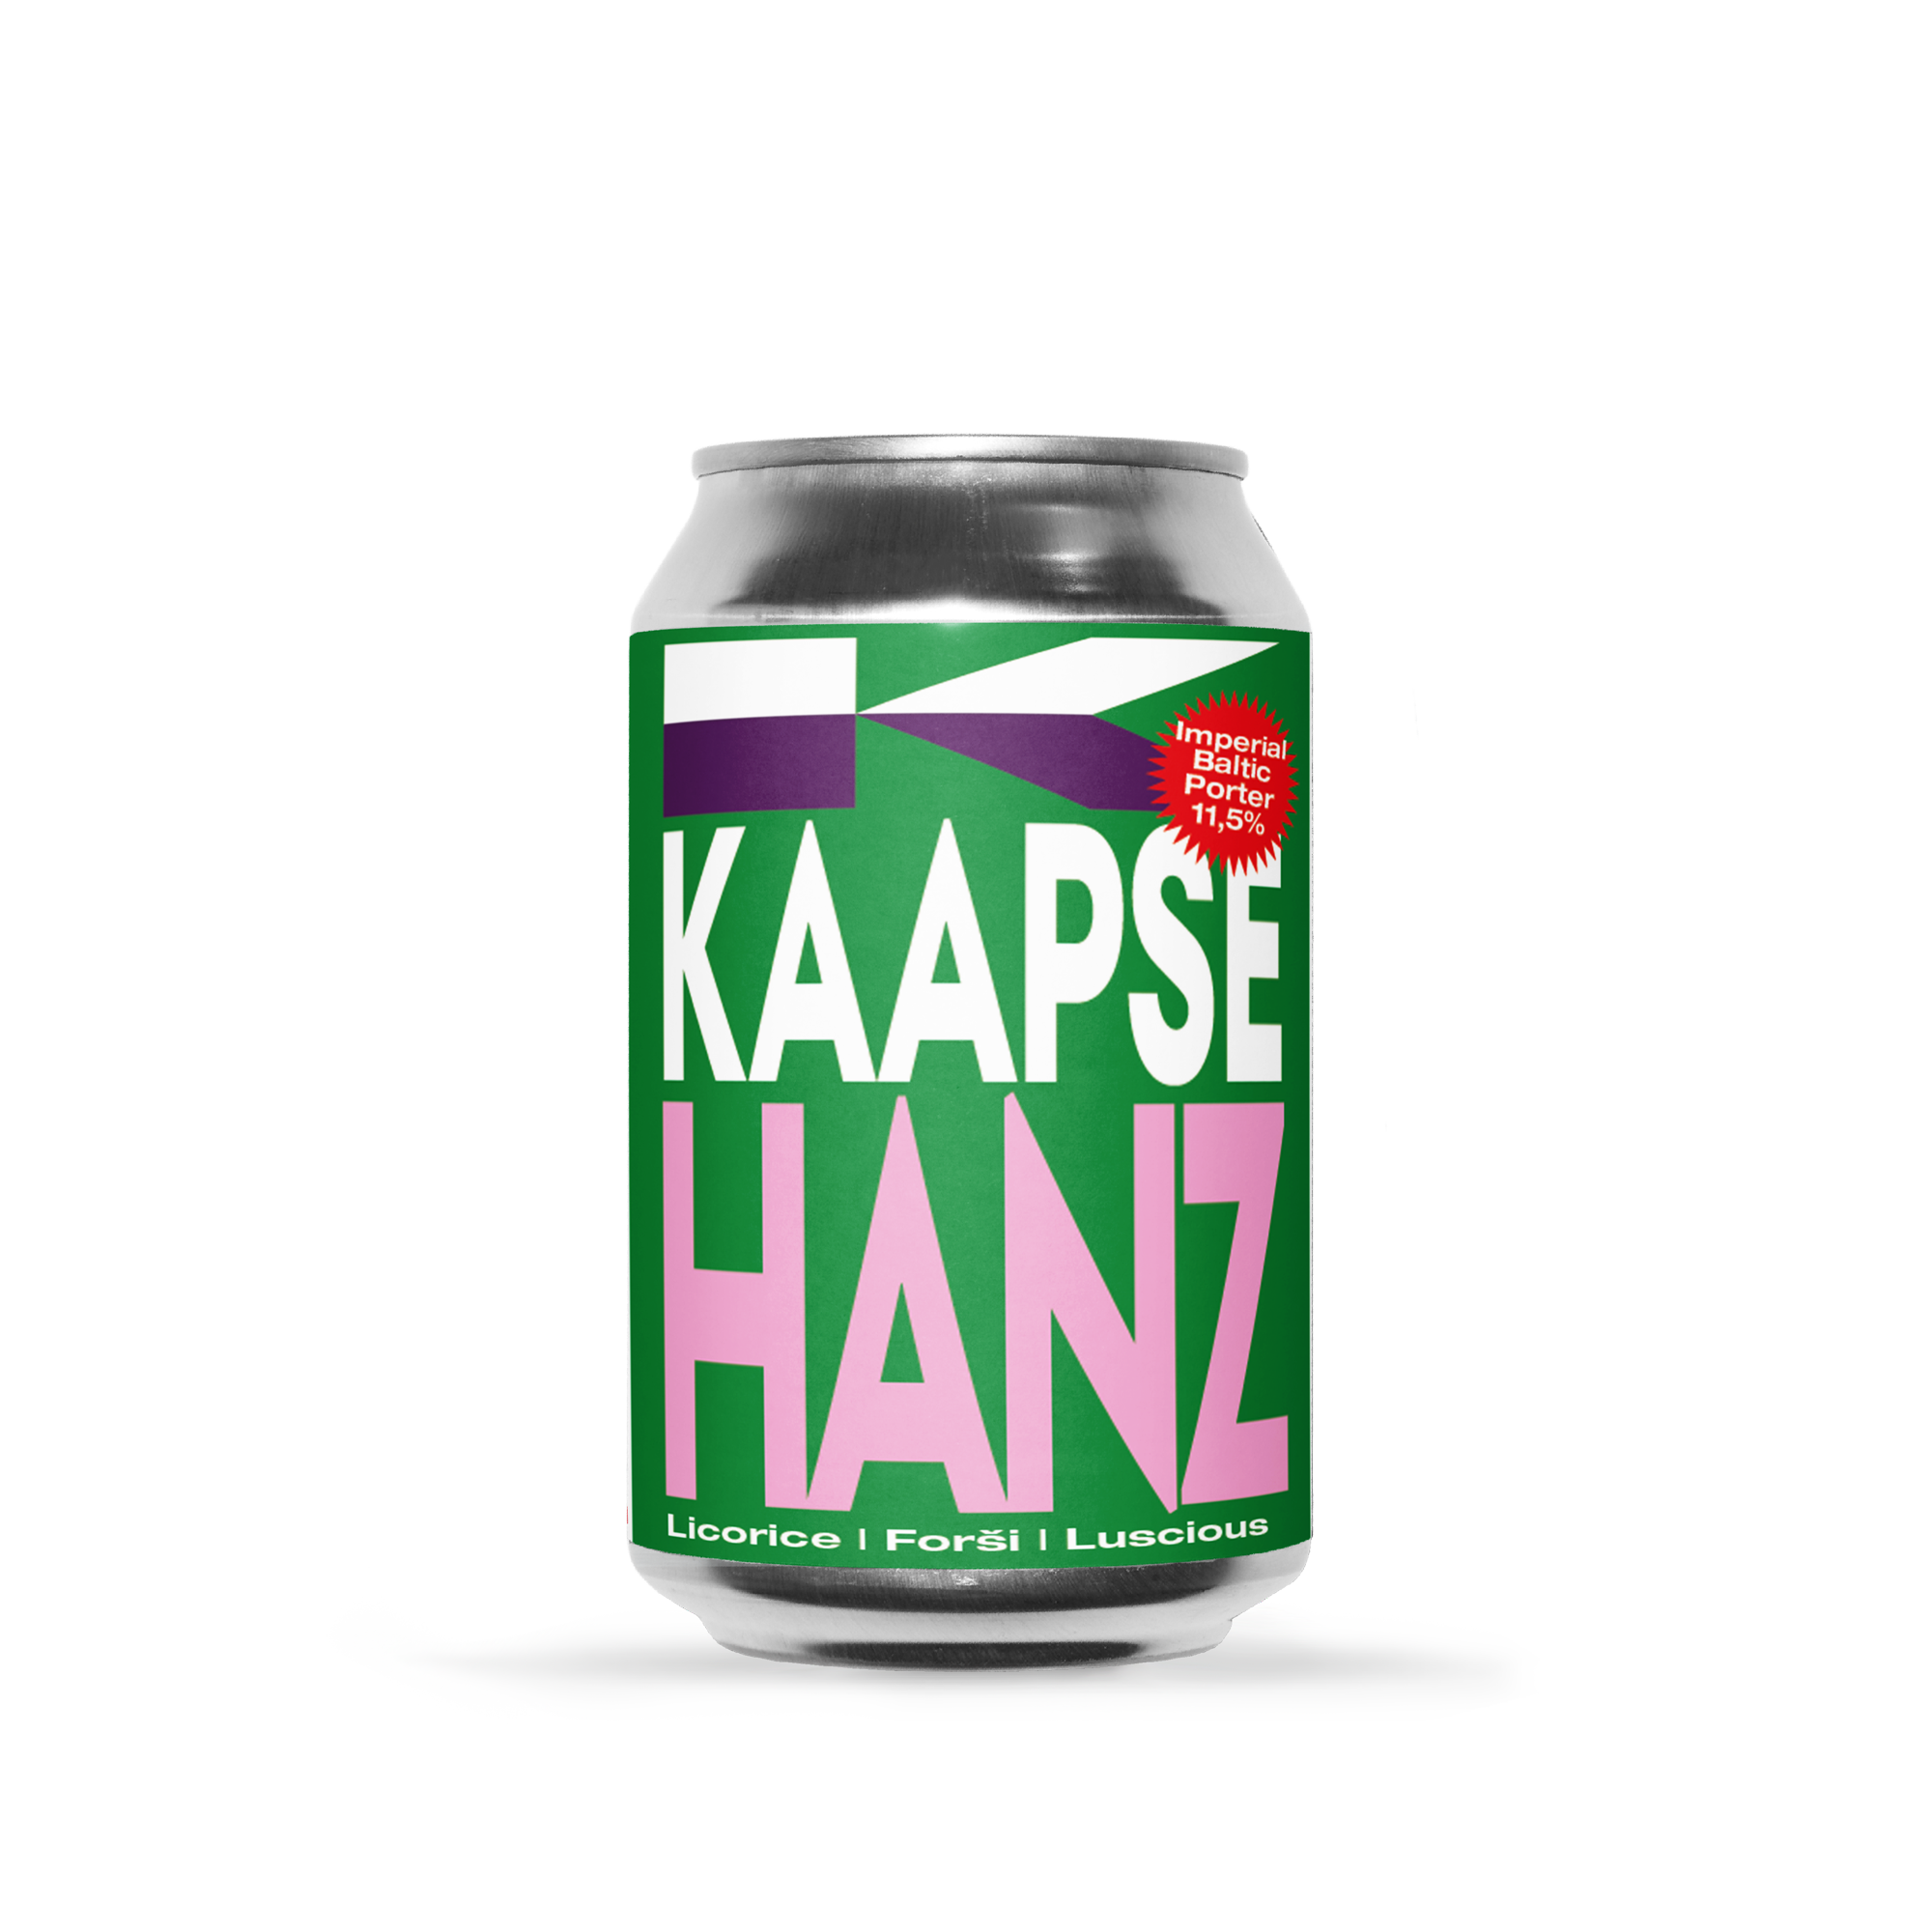 Kaapse Hanz